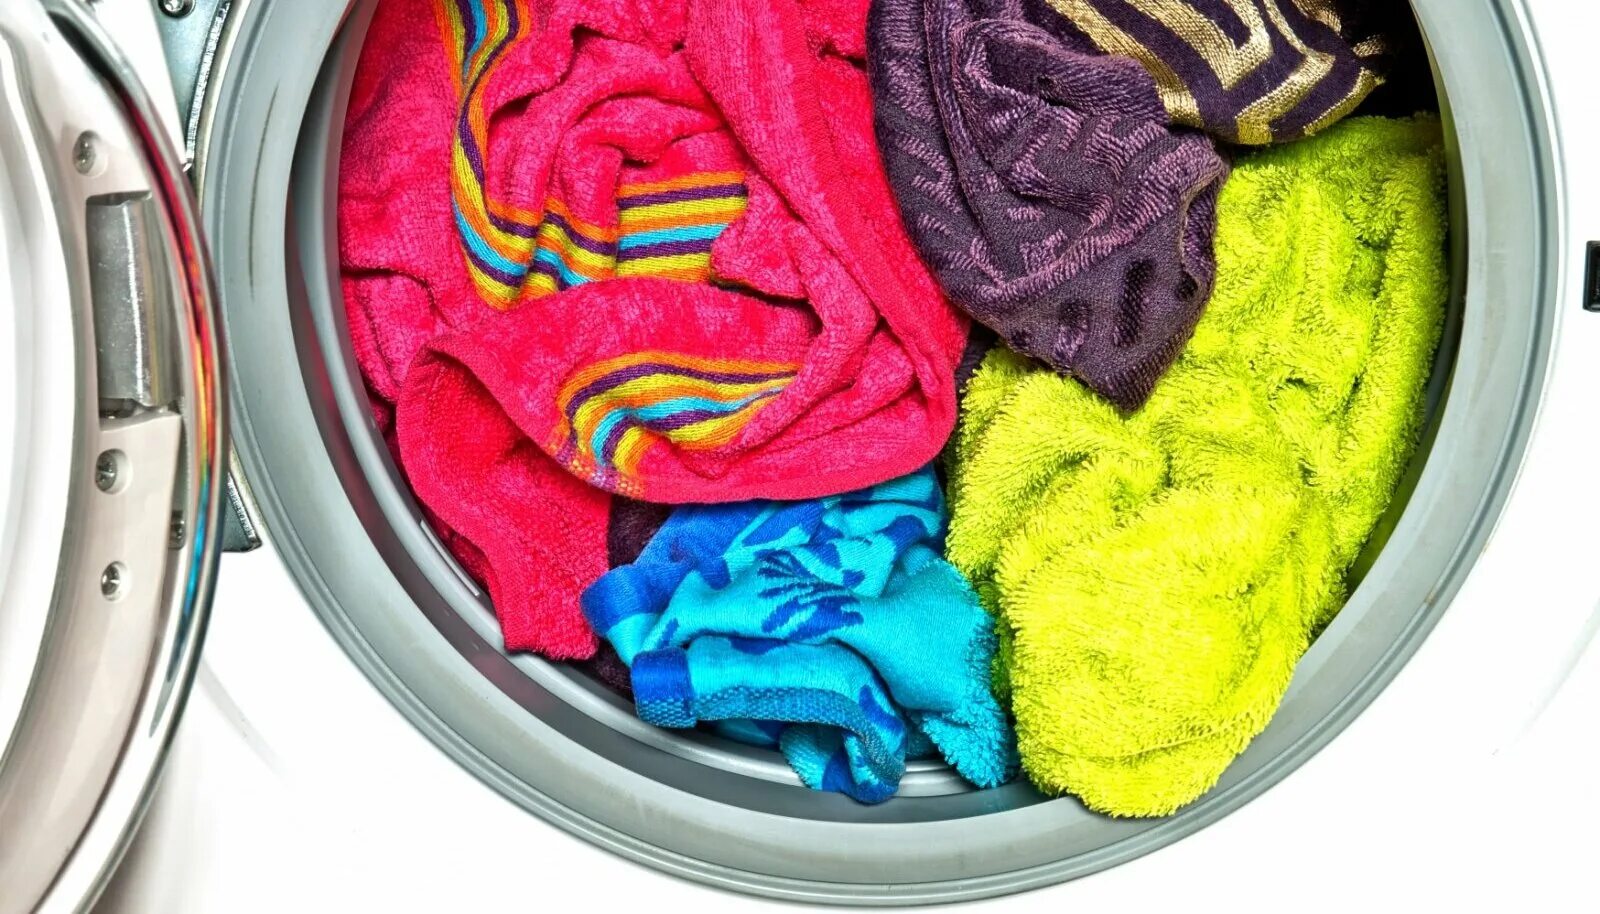 Цветные вещи. Мятое белье в машинке. Вонючее полотенце. Одежда после стирки пахнет затхлостью.